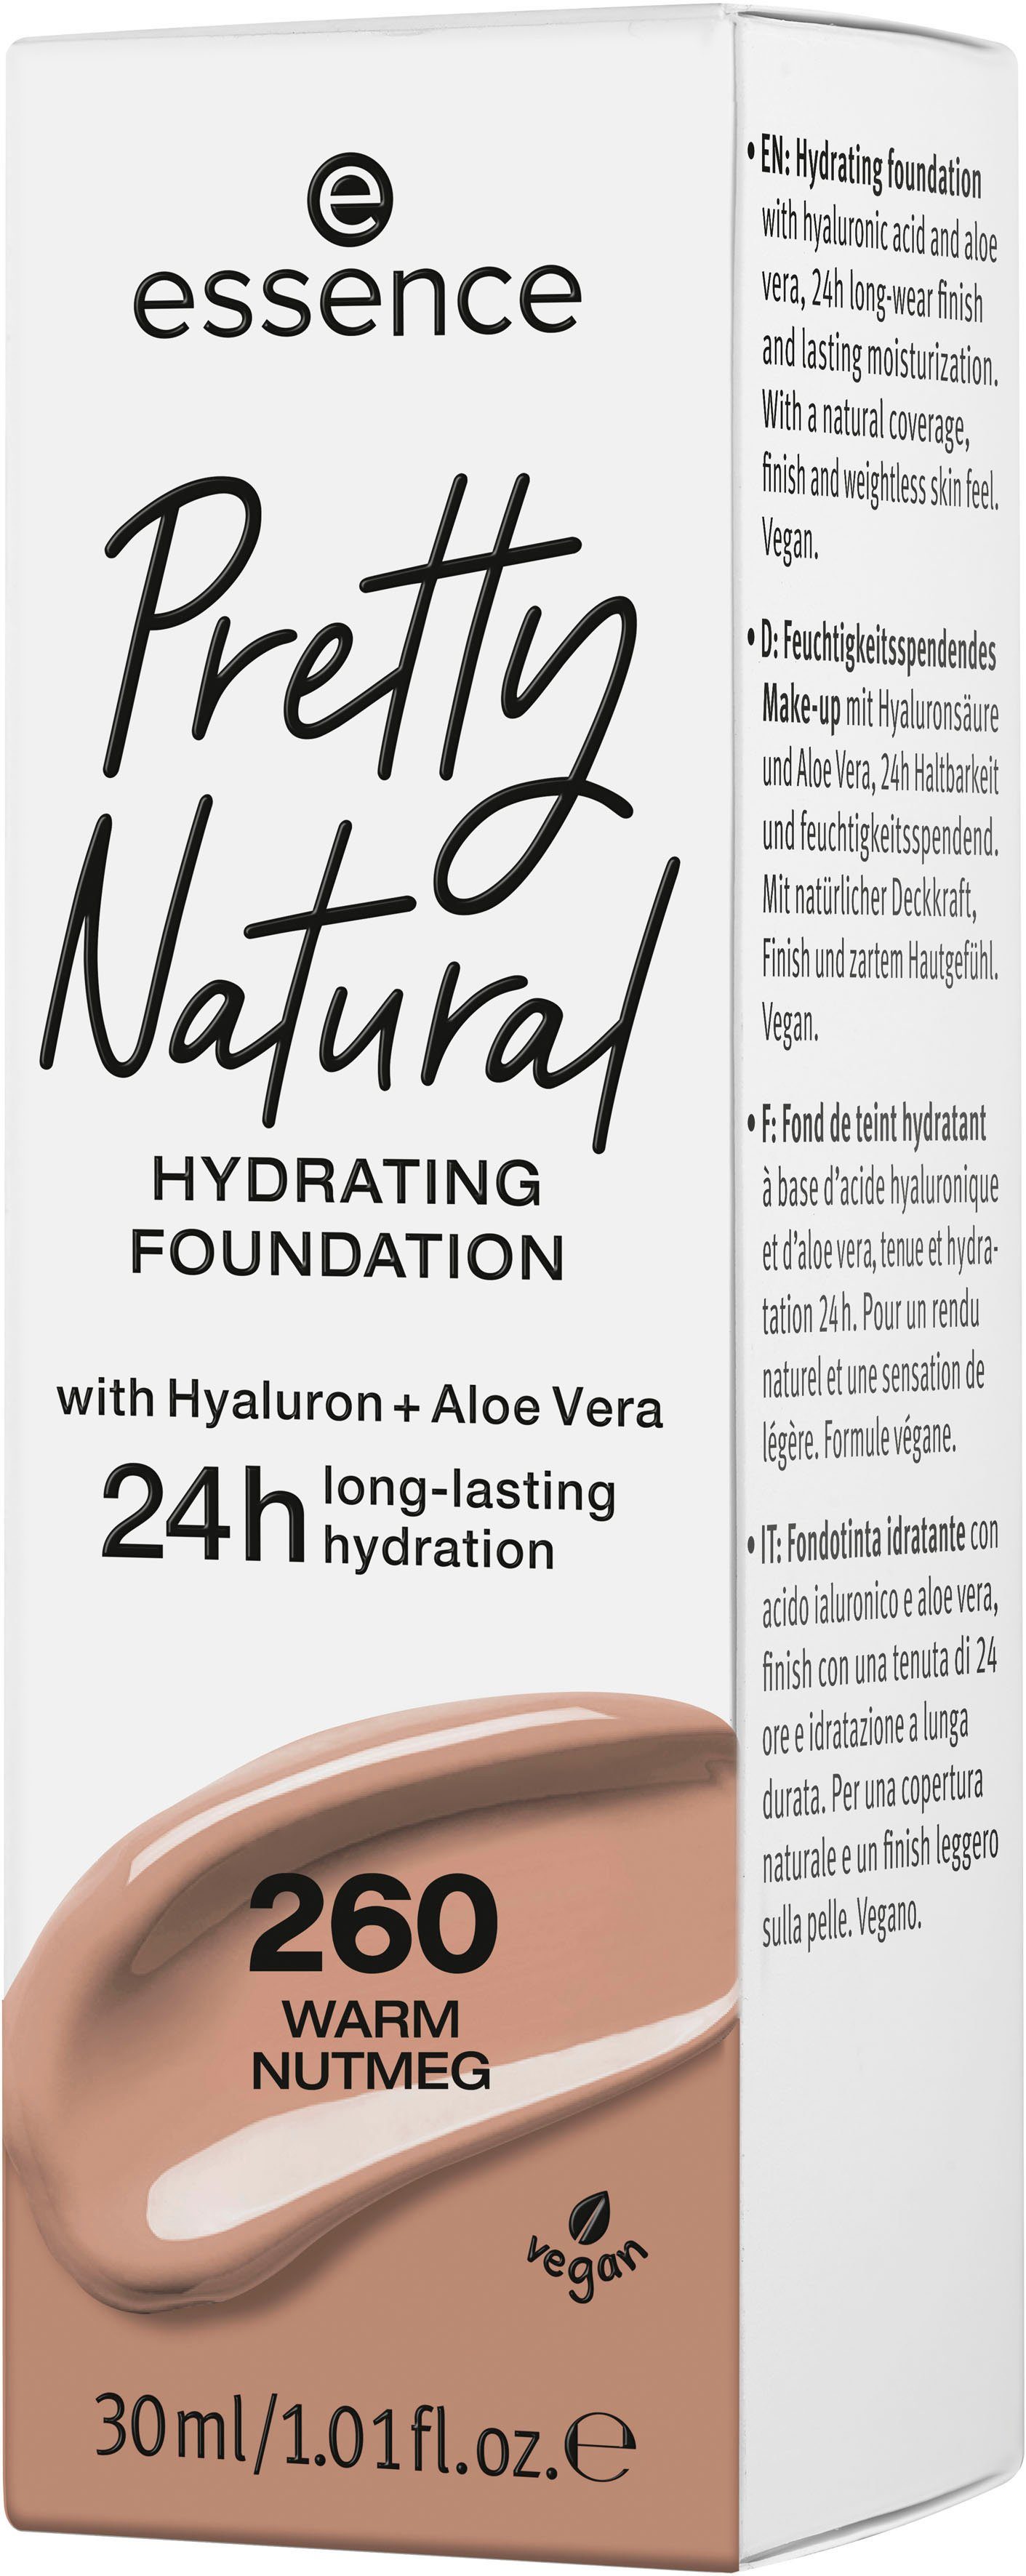 3-tlg. Nutmeg HYDRATING, Natural Warm Pretty Essence Foundation